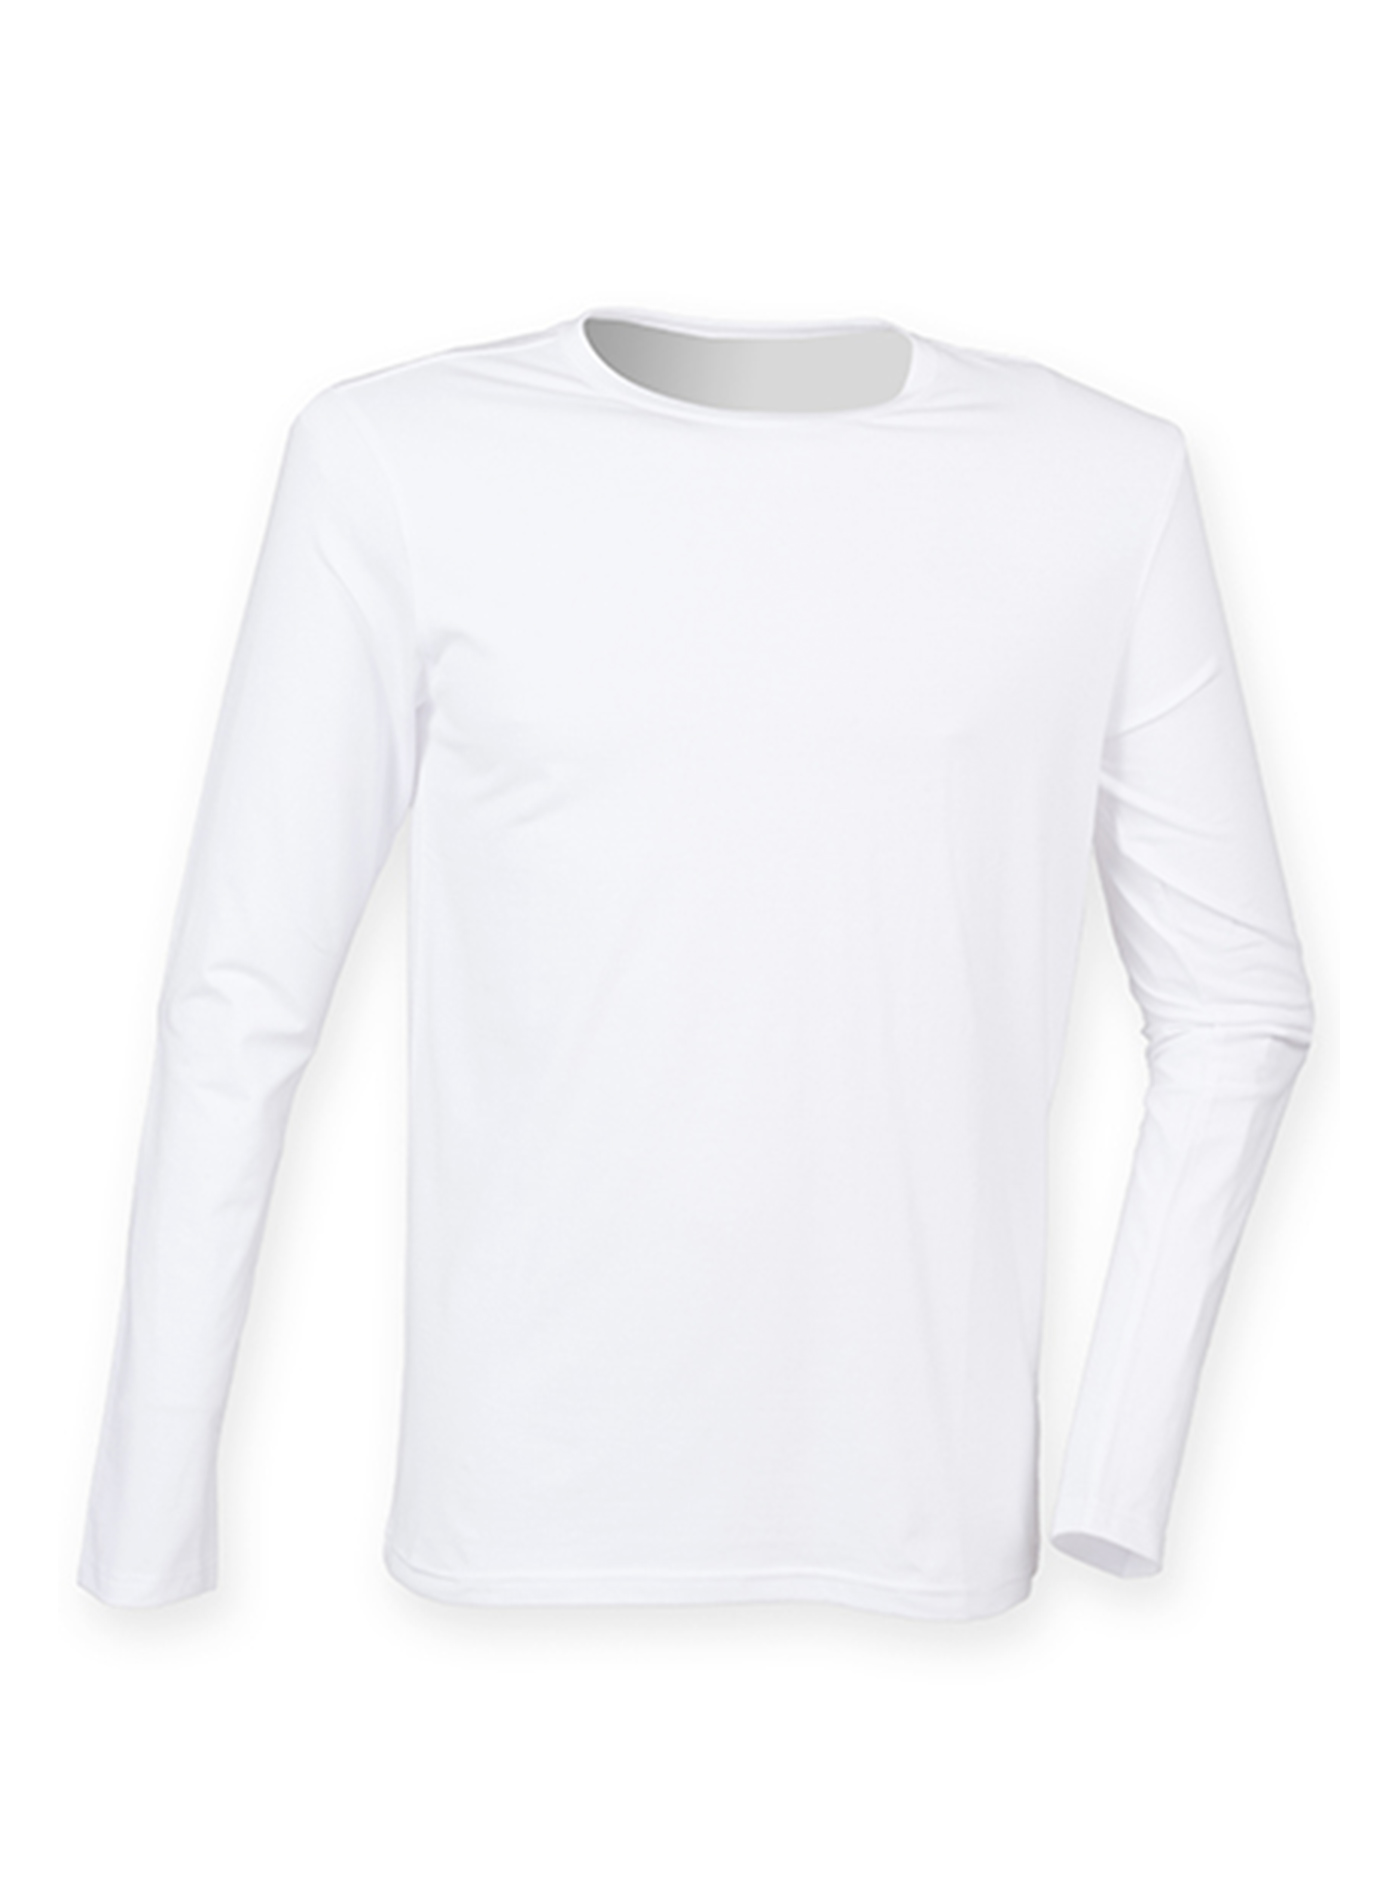 Pánské tričko s dlouhým rukávem Skinnifit Feels Good - Bílá XL